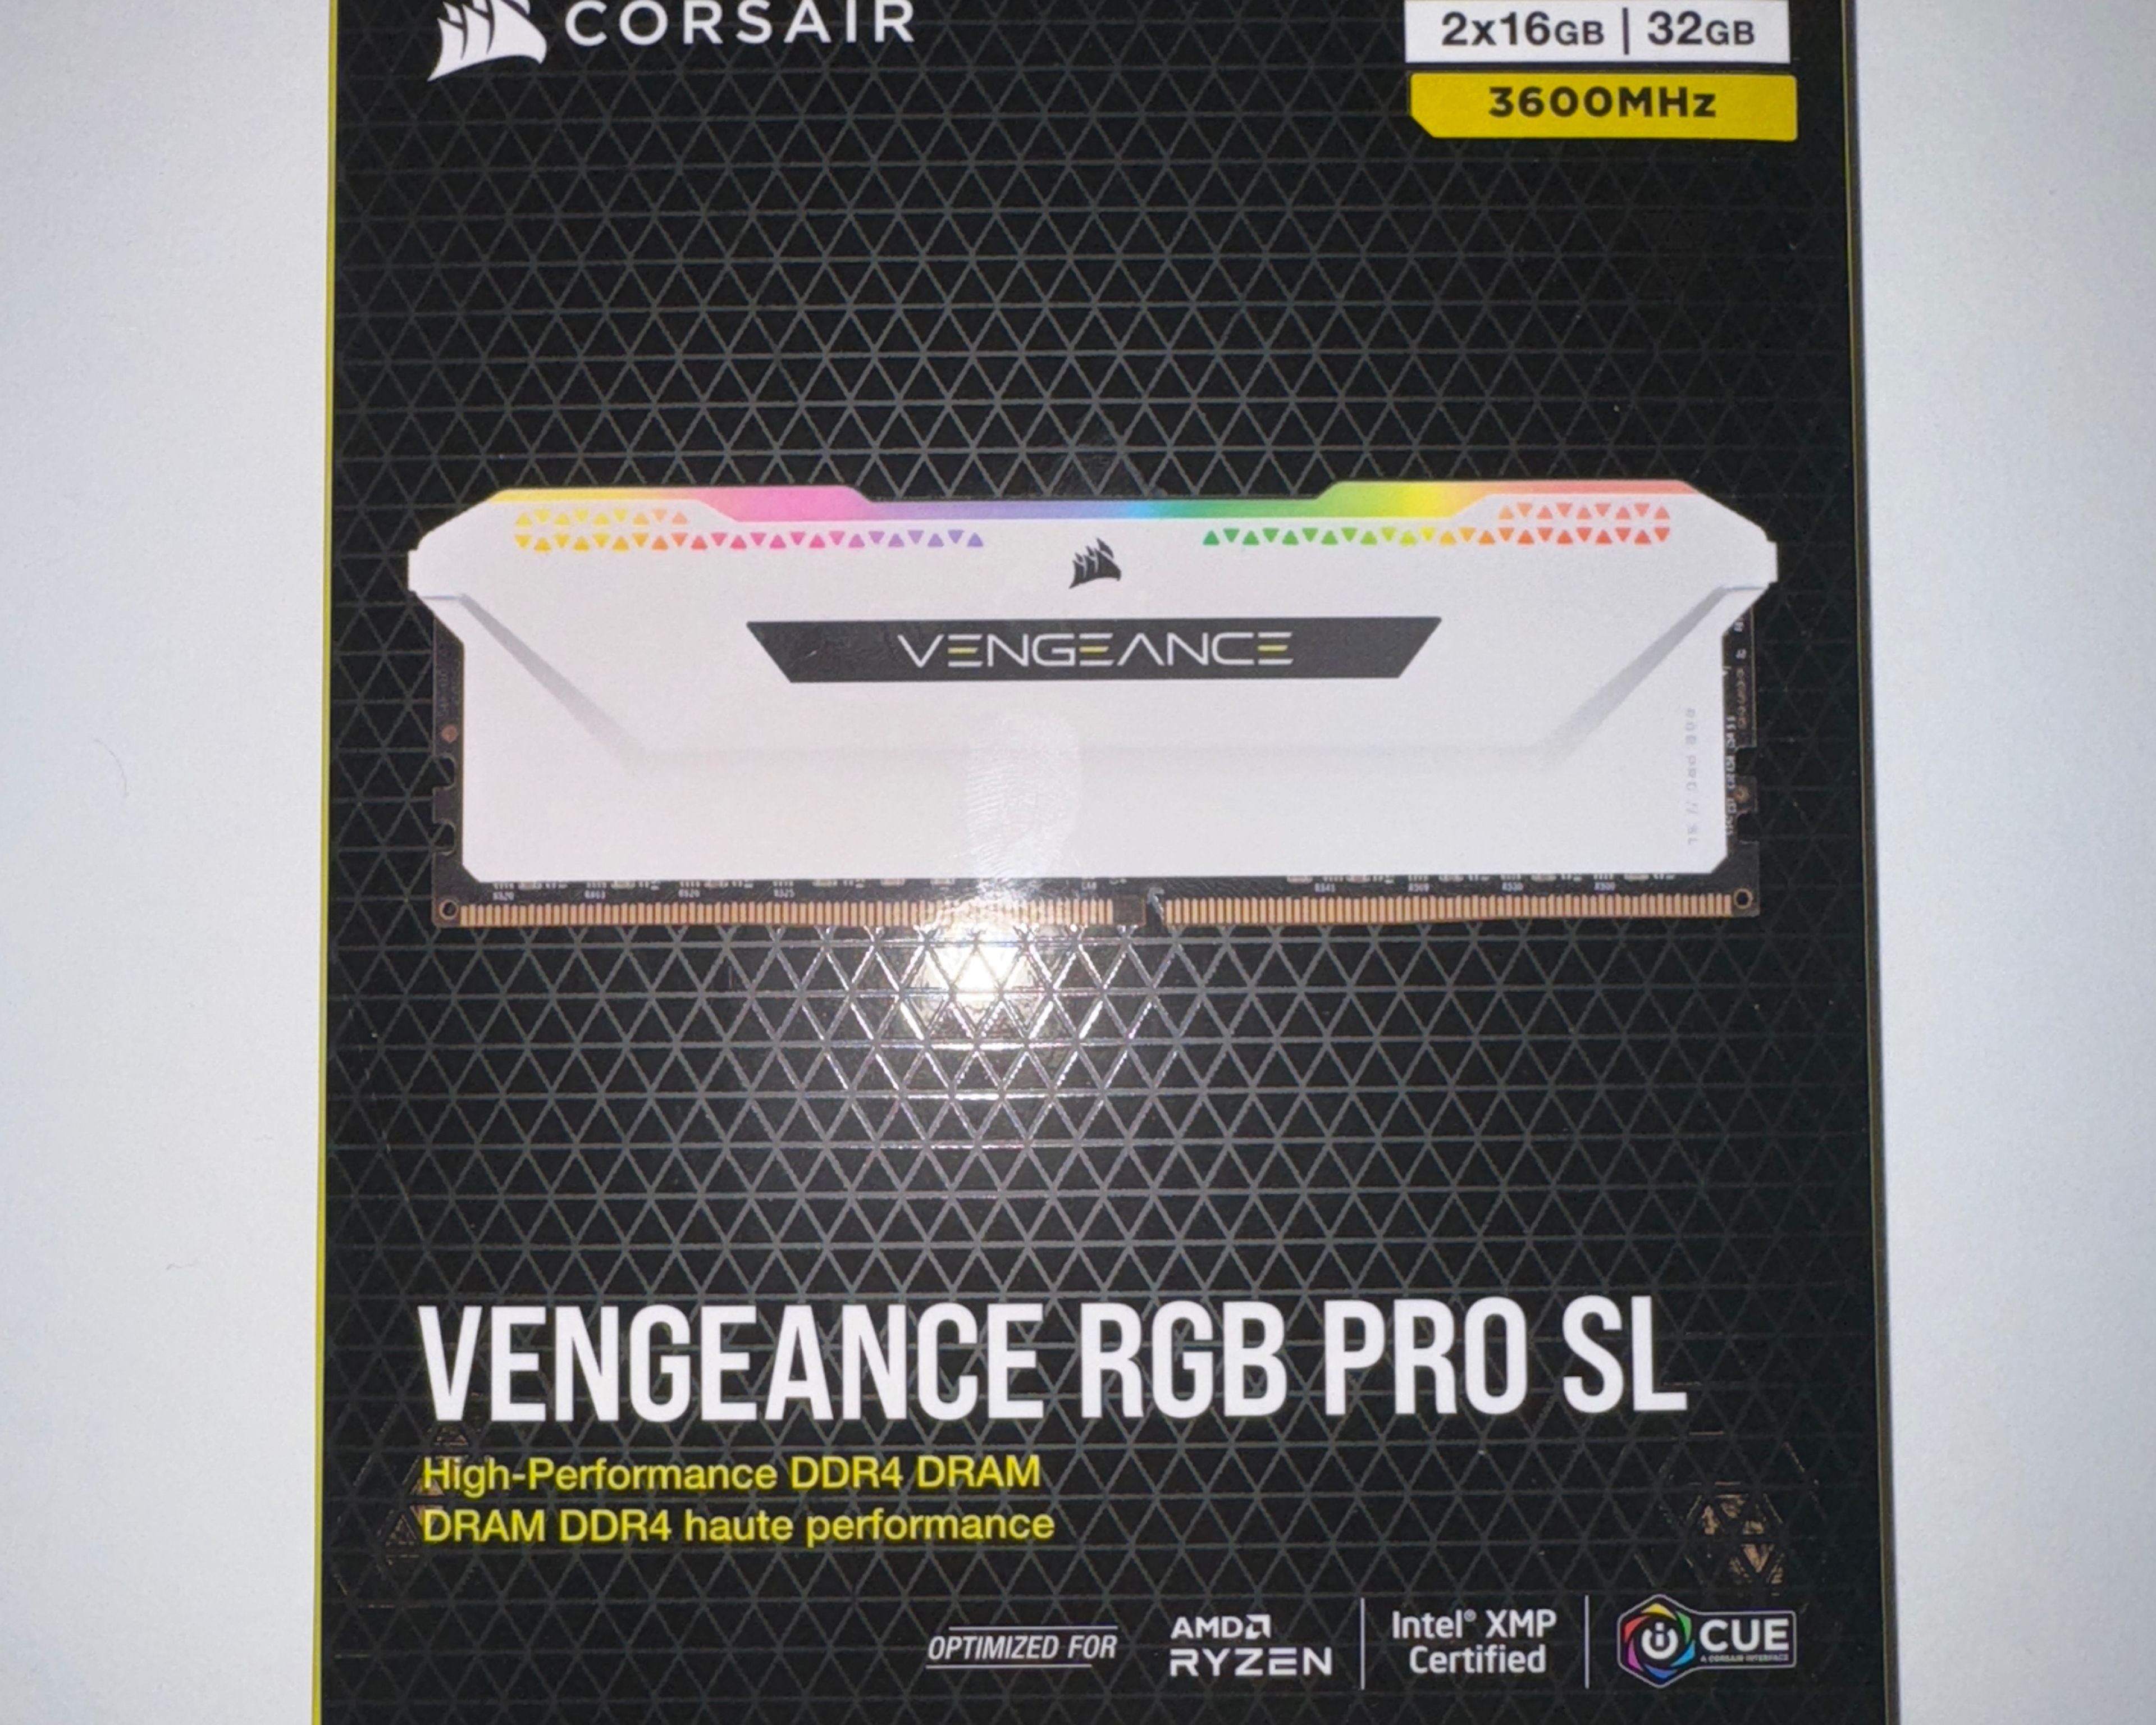 Corsair Vengeance RGB Pro SL DDR4 (16x2GB) 32GB C18 3600Mhz DRAM Gaming Memory- White